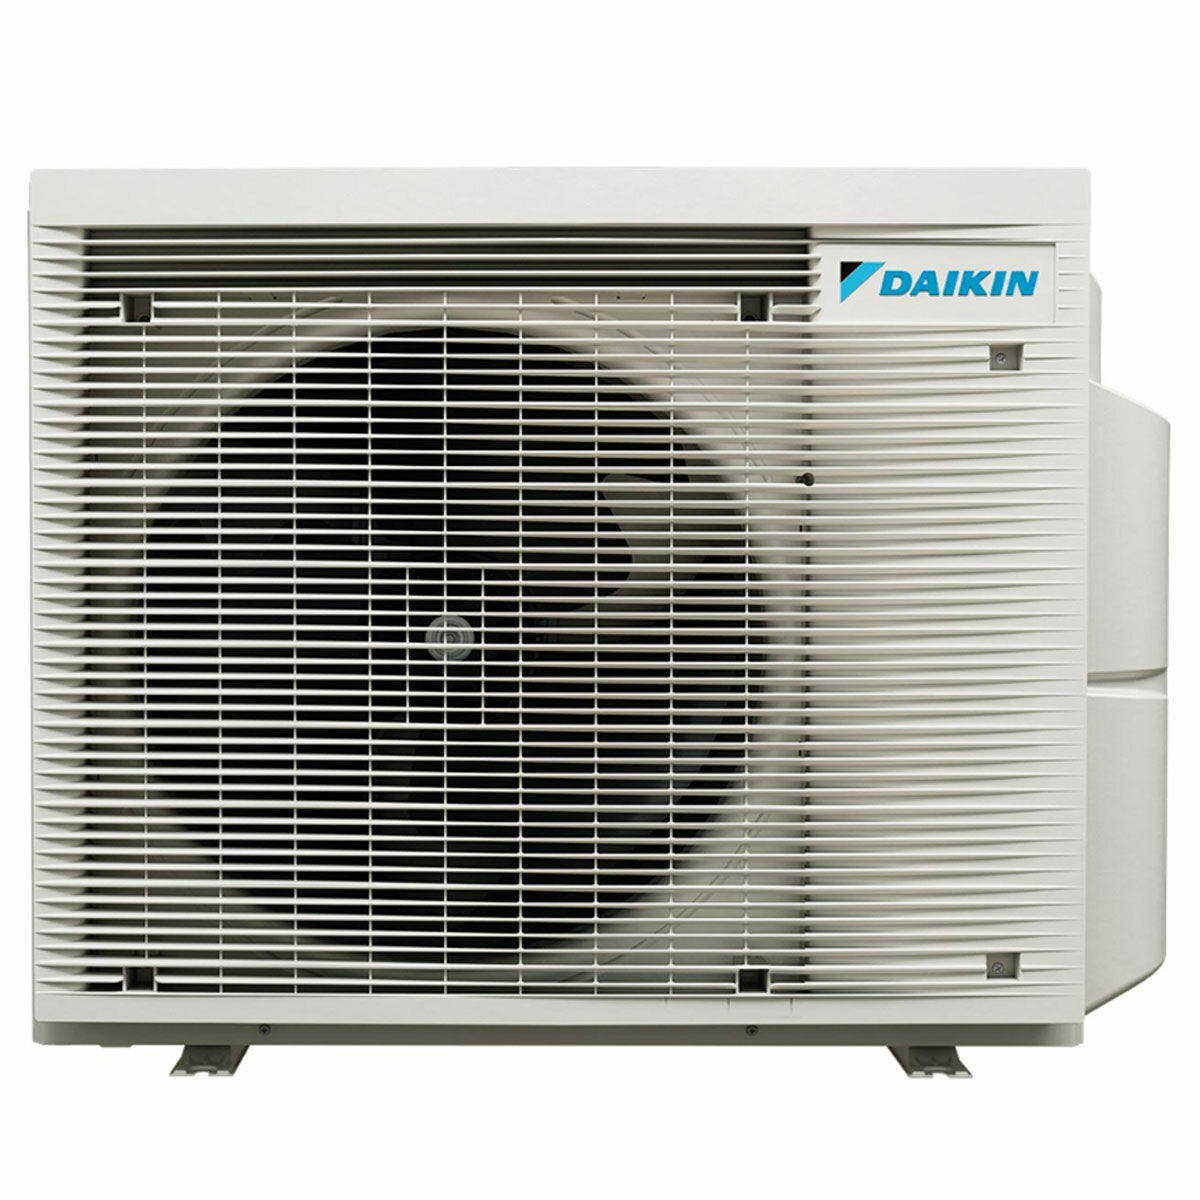 Daikin Stylish Trial Split Klimaanlage 7000 + 7000 + 18000 BTU Wechselrichter A ++ WLAN Außengerät 5,2 kW